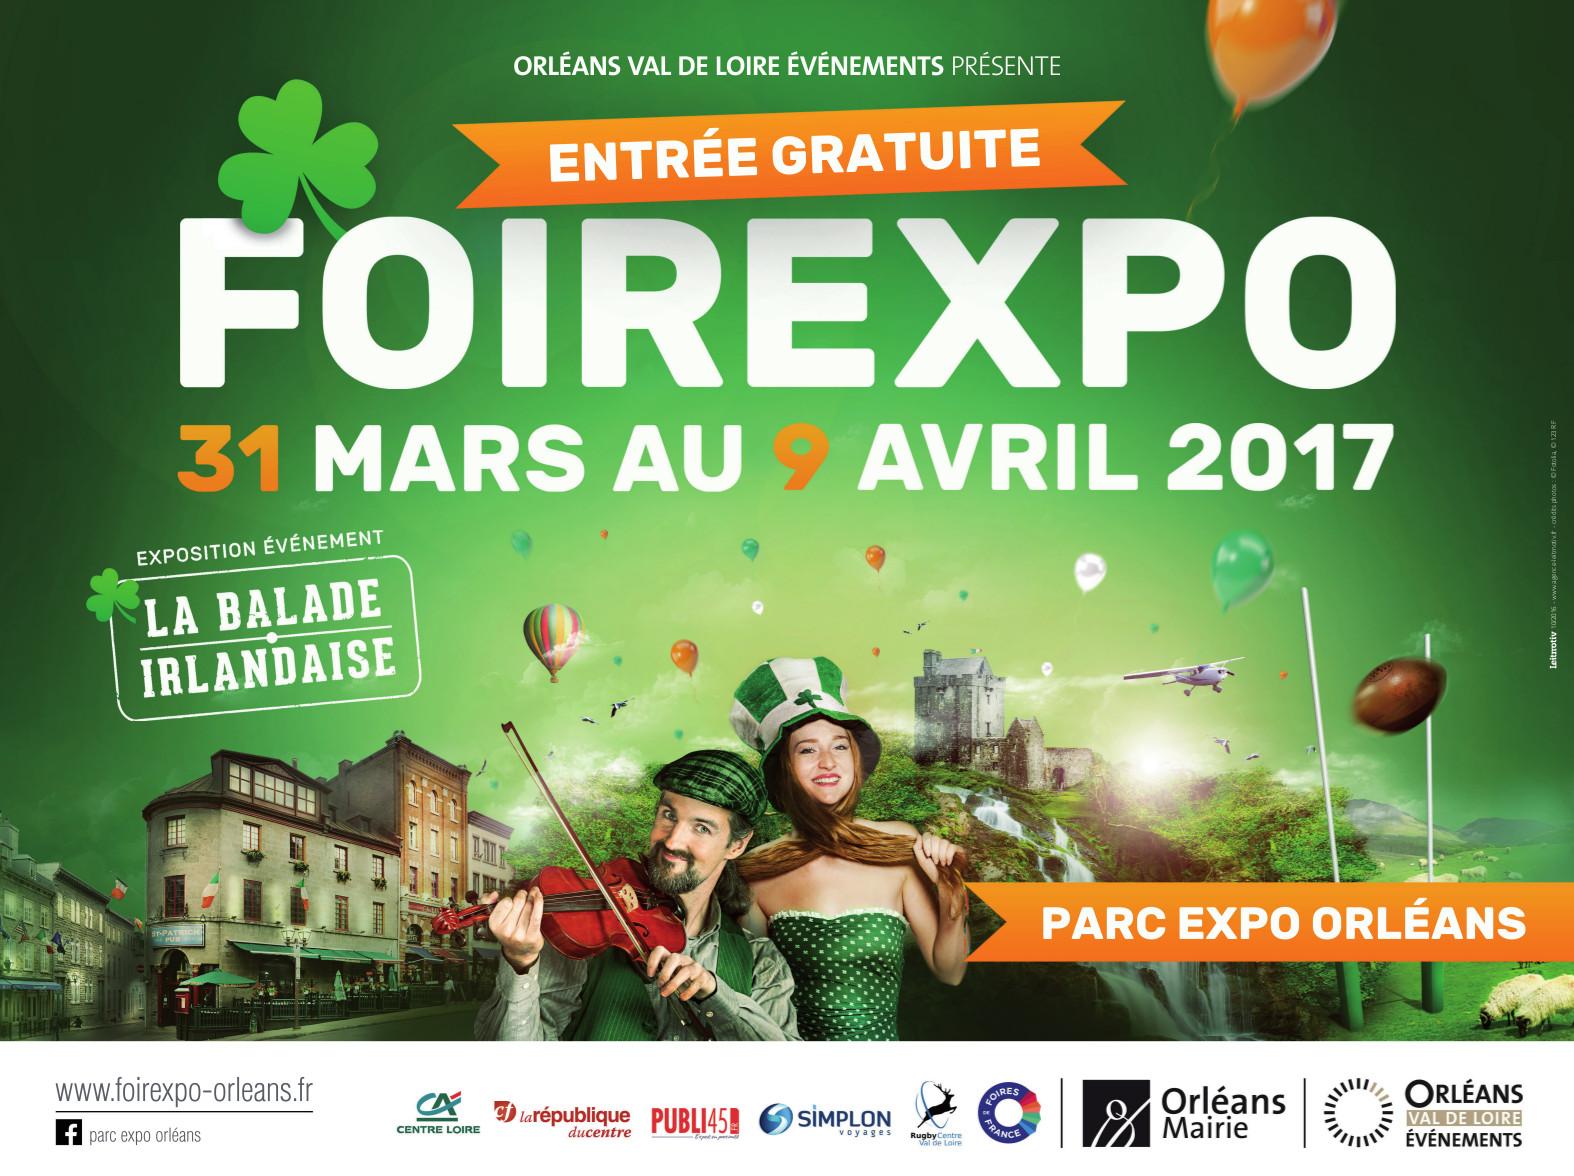 Foirexpo Orleans 2017